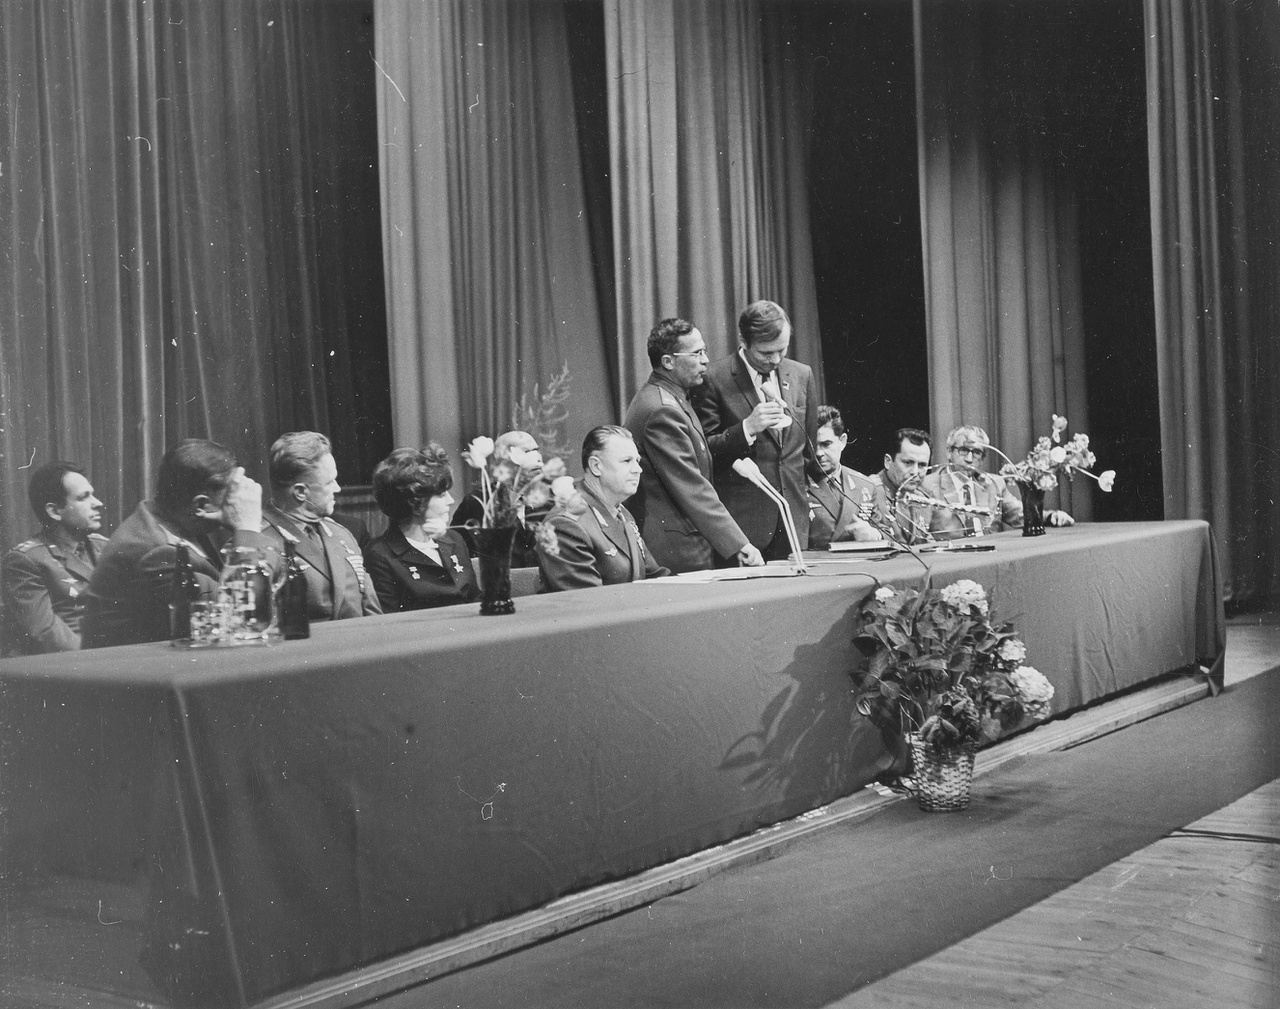 A COSPAR, azaz az Űrkutatási Tanács az űrkutatásban résztvevő országok nemzetközi tudományos uniójaként jött létre 1958-ban, azzal a céllal hogy interdiszciplináris bizottságként támogassa az űrkutatási tevékenységet, többek között kétévente rendezett nemzetközi tudományos kongresszusokkal, mint amilyenen Armstrong is részt vett 1970-ben. 